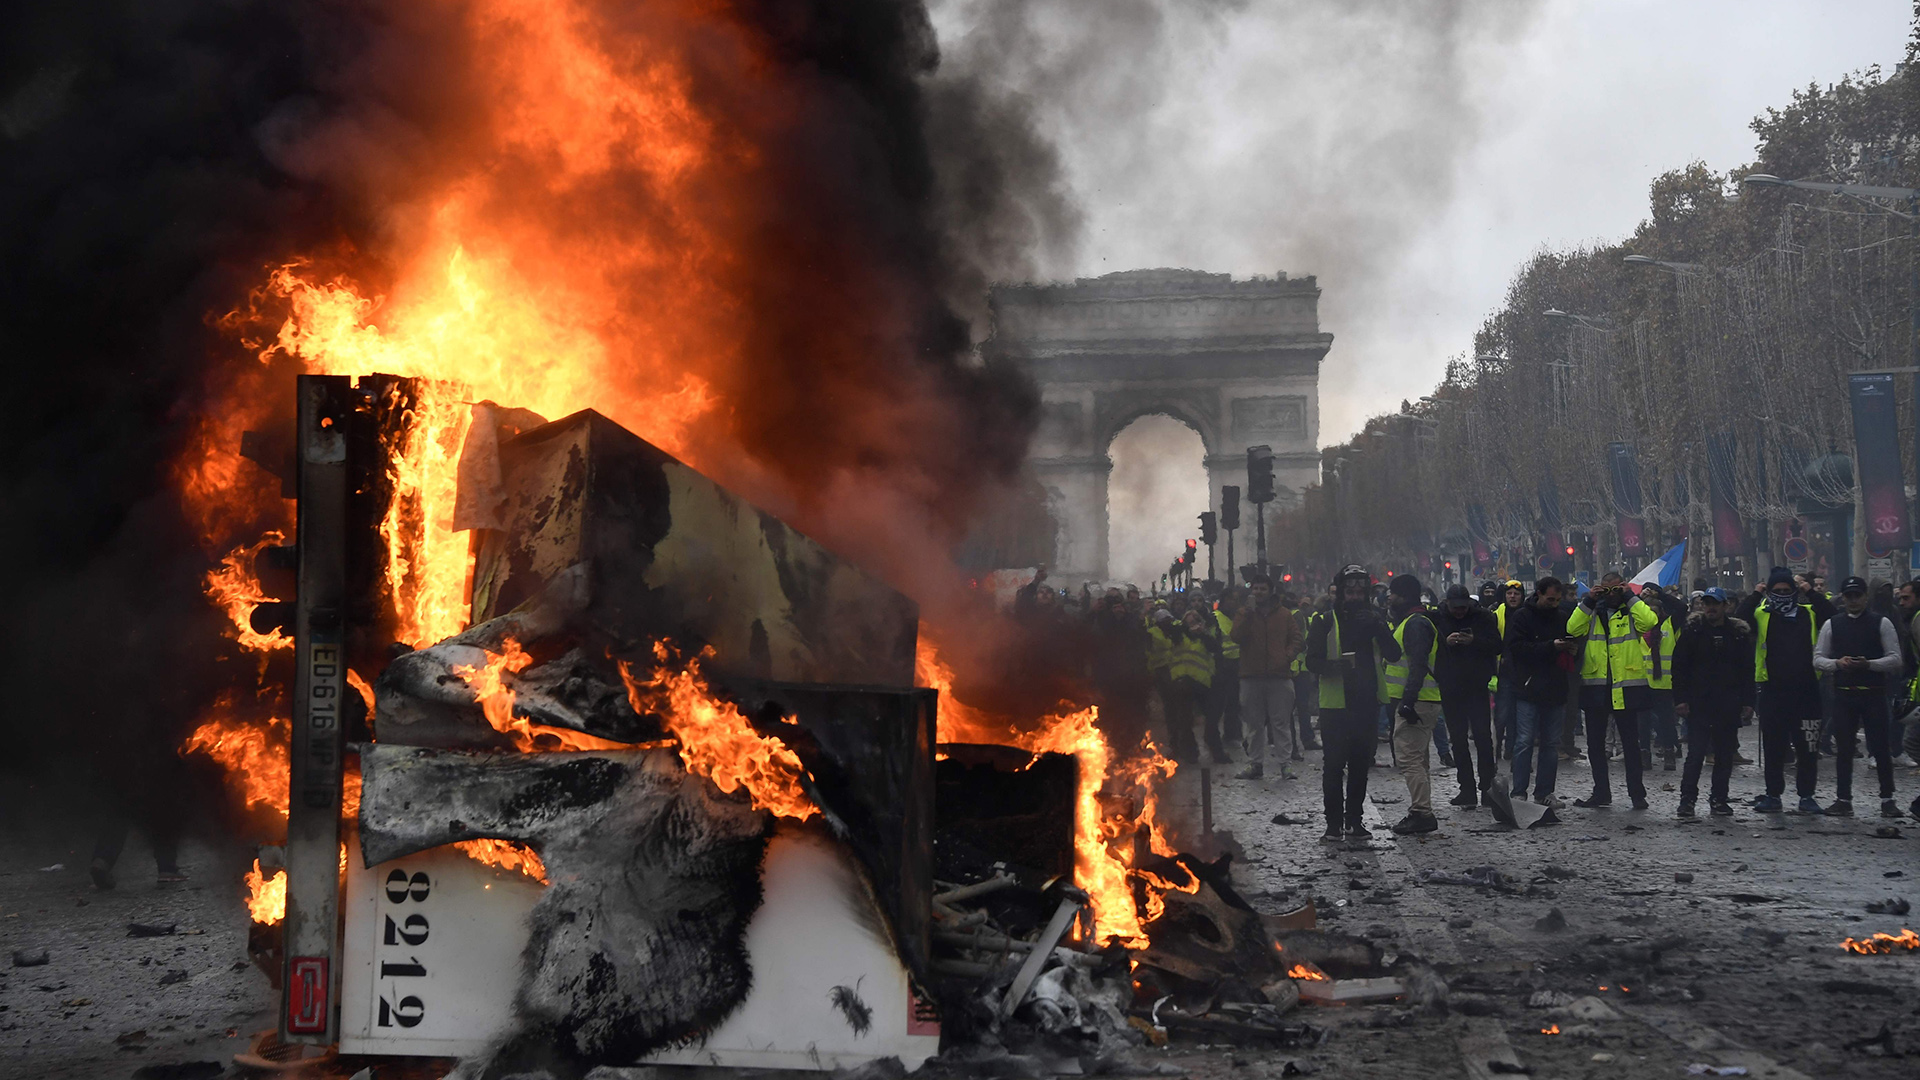 Brennender Transporter und Demonstranten in gelben Westen  | Bildquelle: AFP